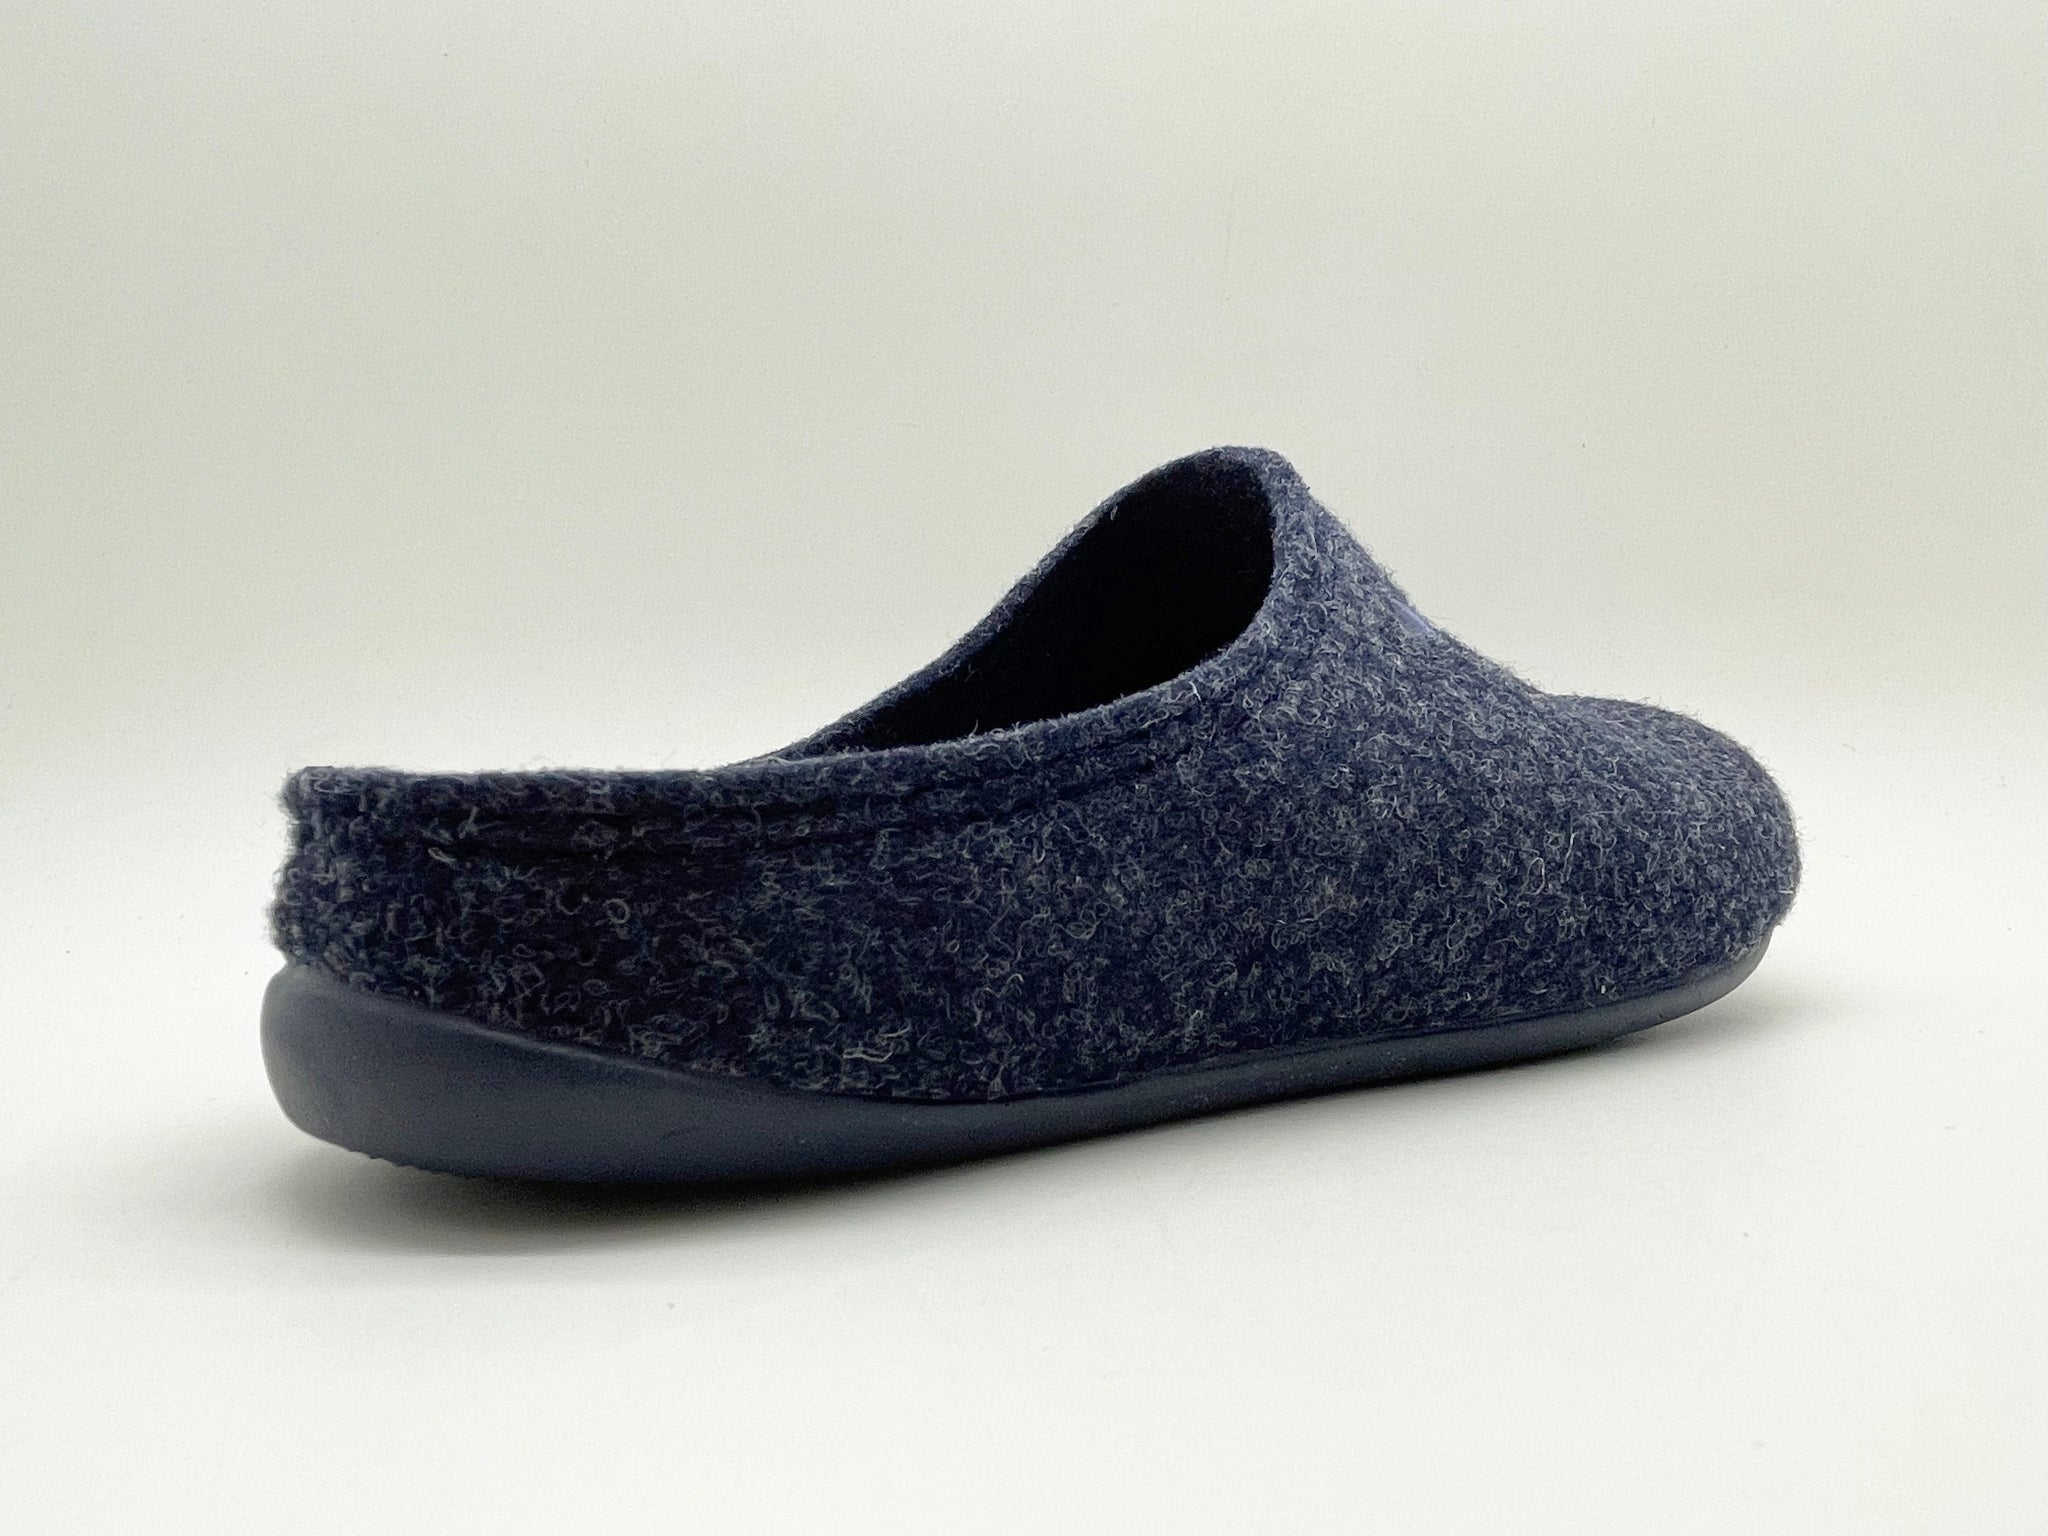 NAT 2 Schuhe thies 1856 ® Recycled PET Slipper vegan dark navy (W/M/X) nachhaltige Mode ethische Mode